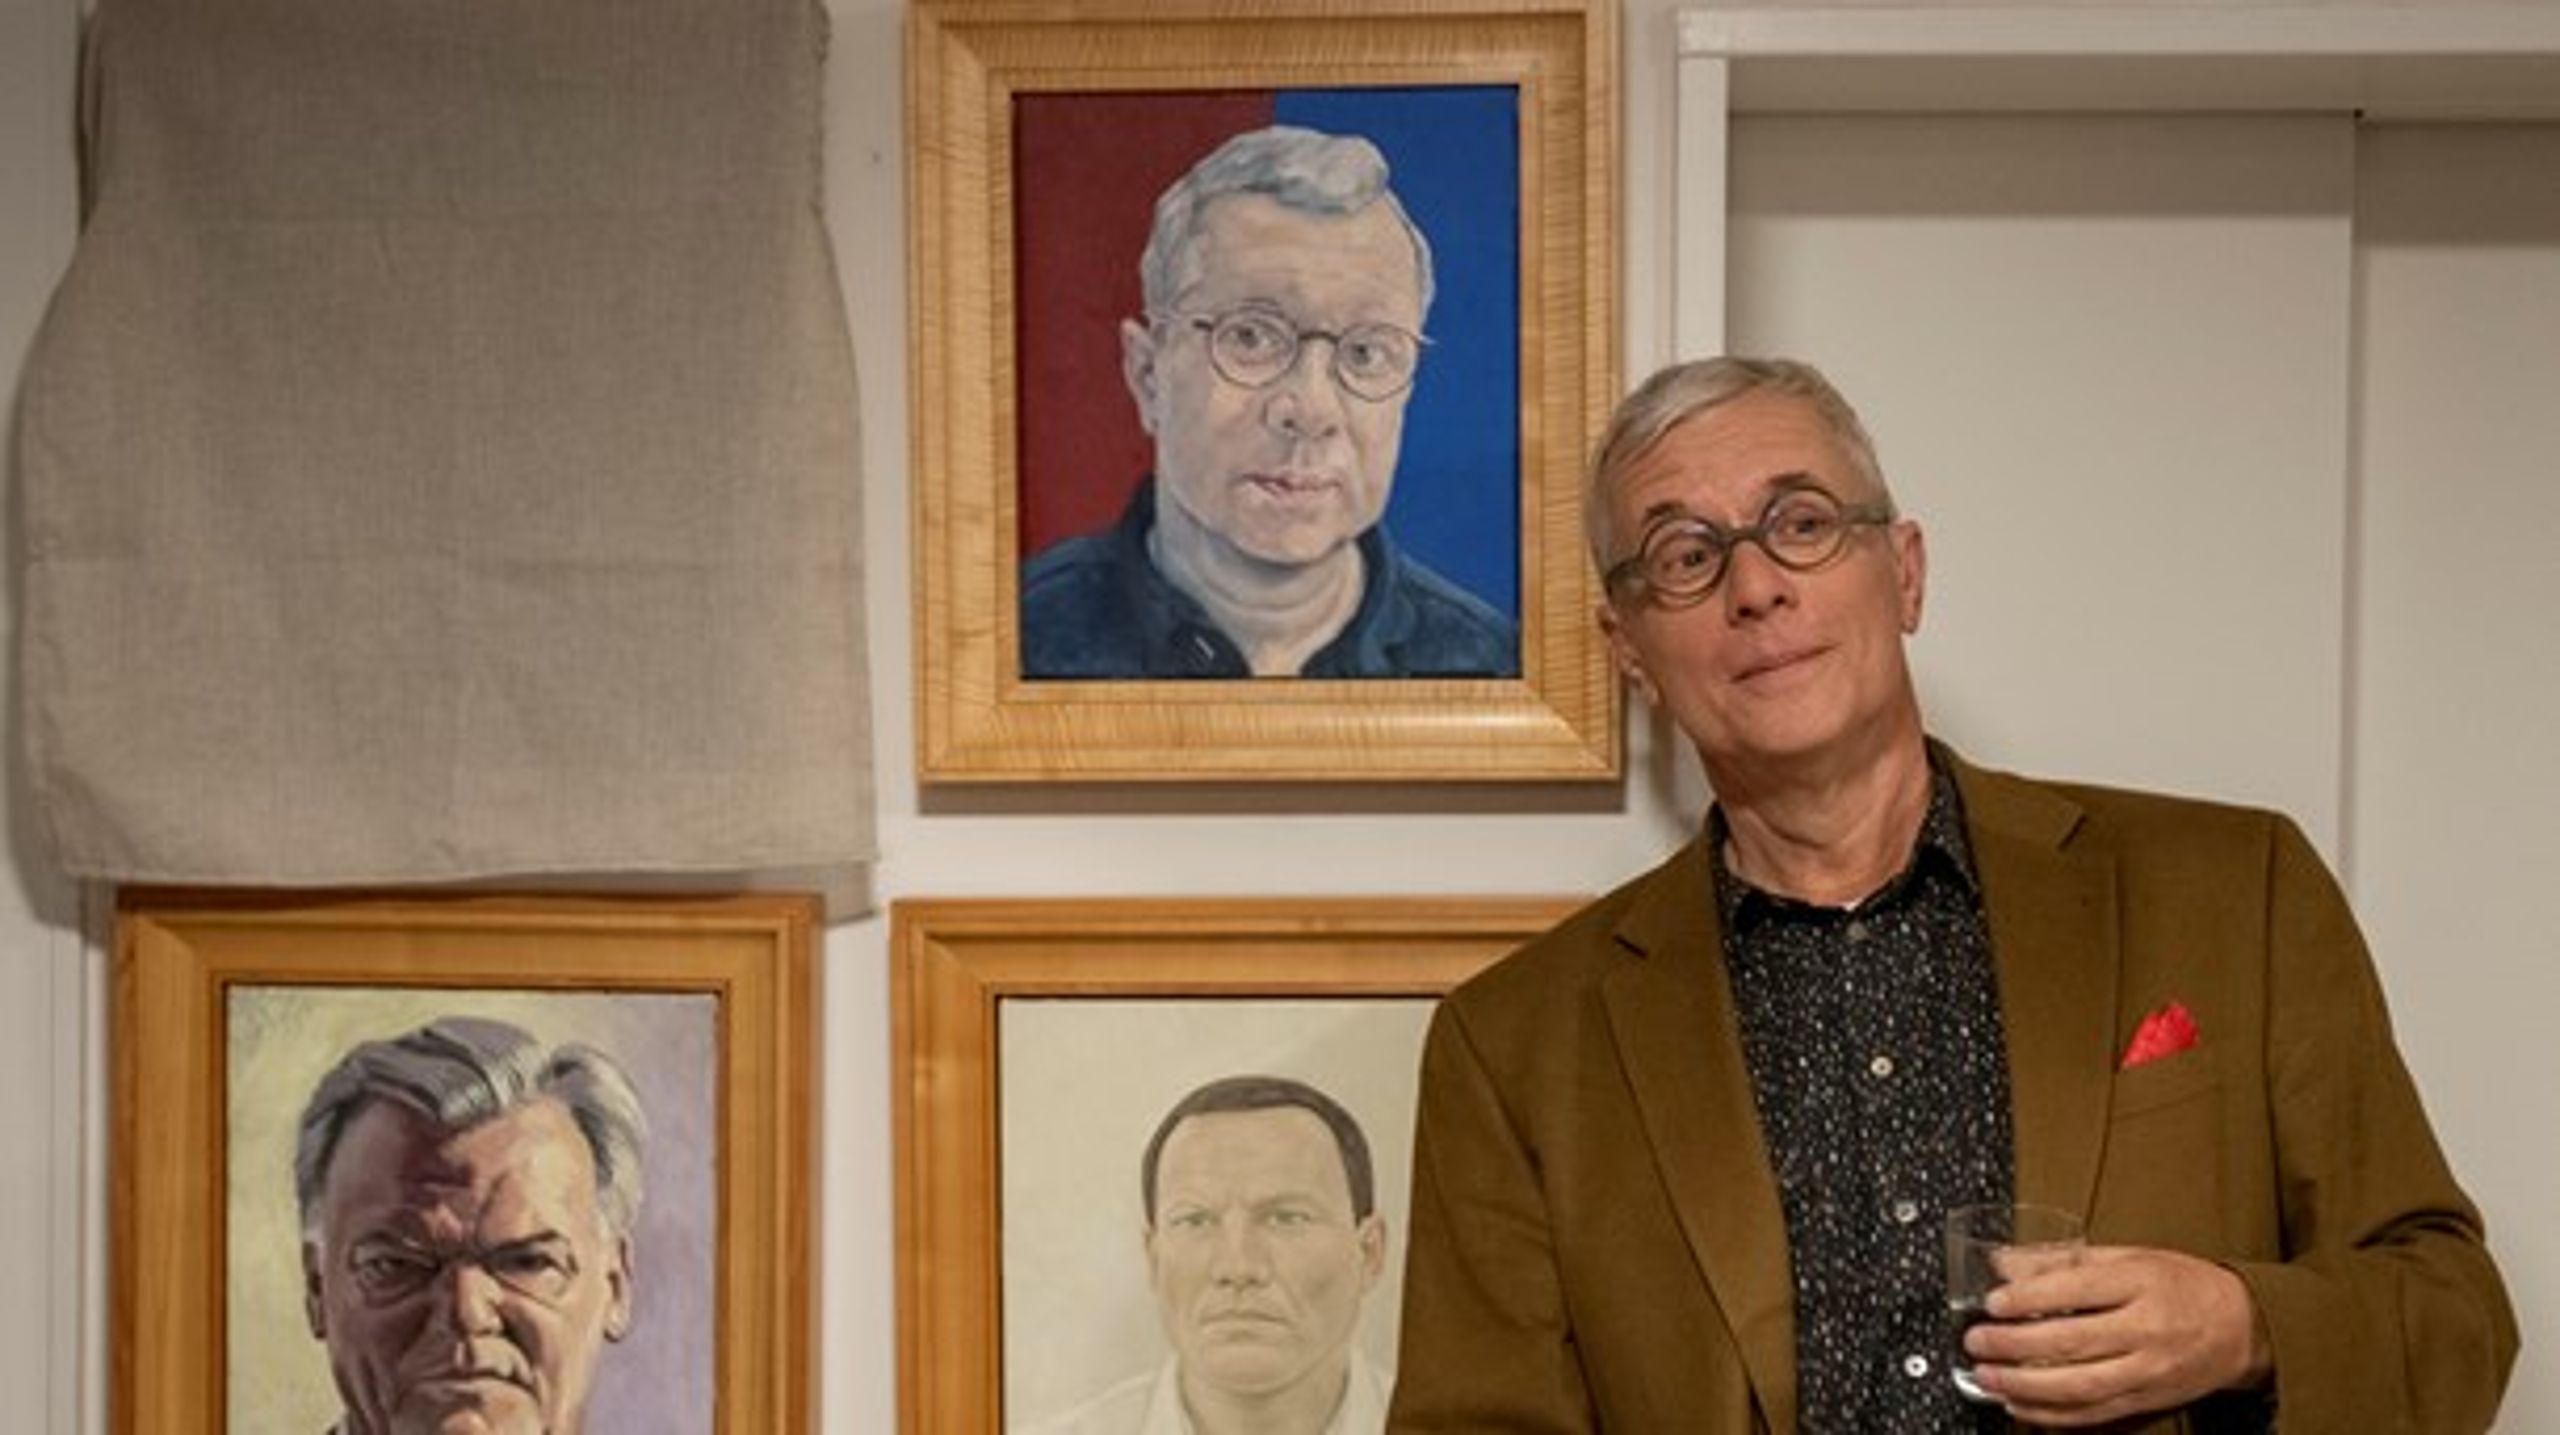 Altingets ejer, Rasmus Nielsen, stiller op til foto ved siden af sit portræt malet af kunstneren Michael Kvium.&nbsp;